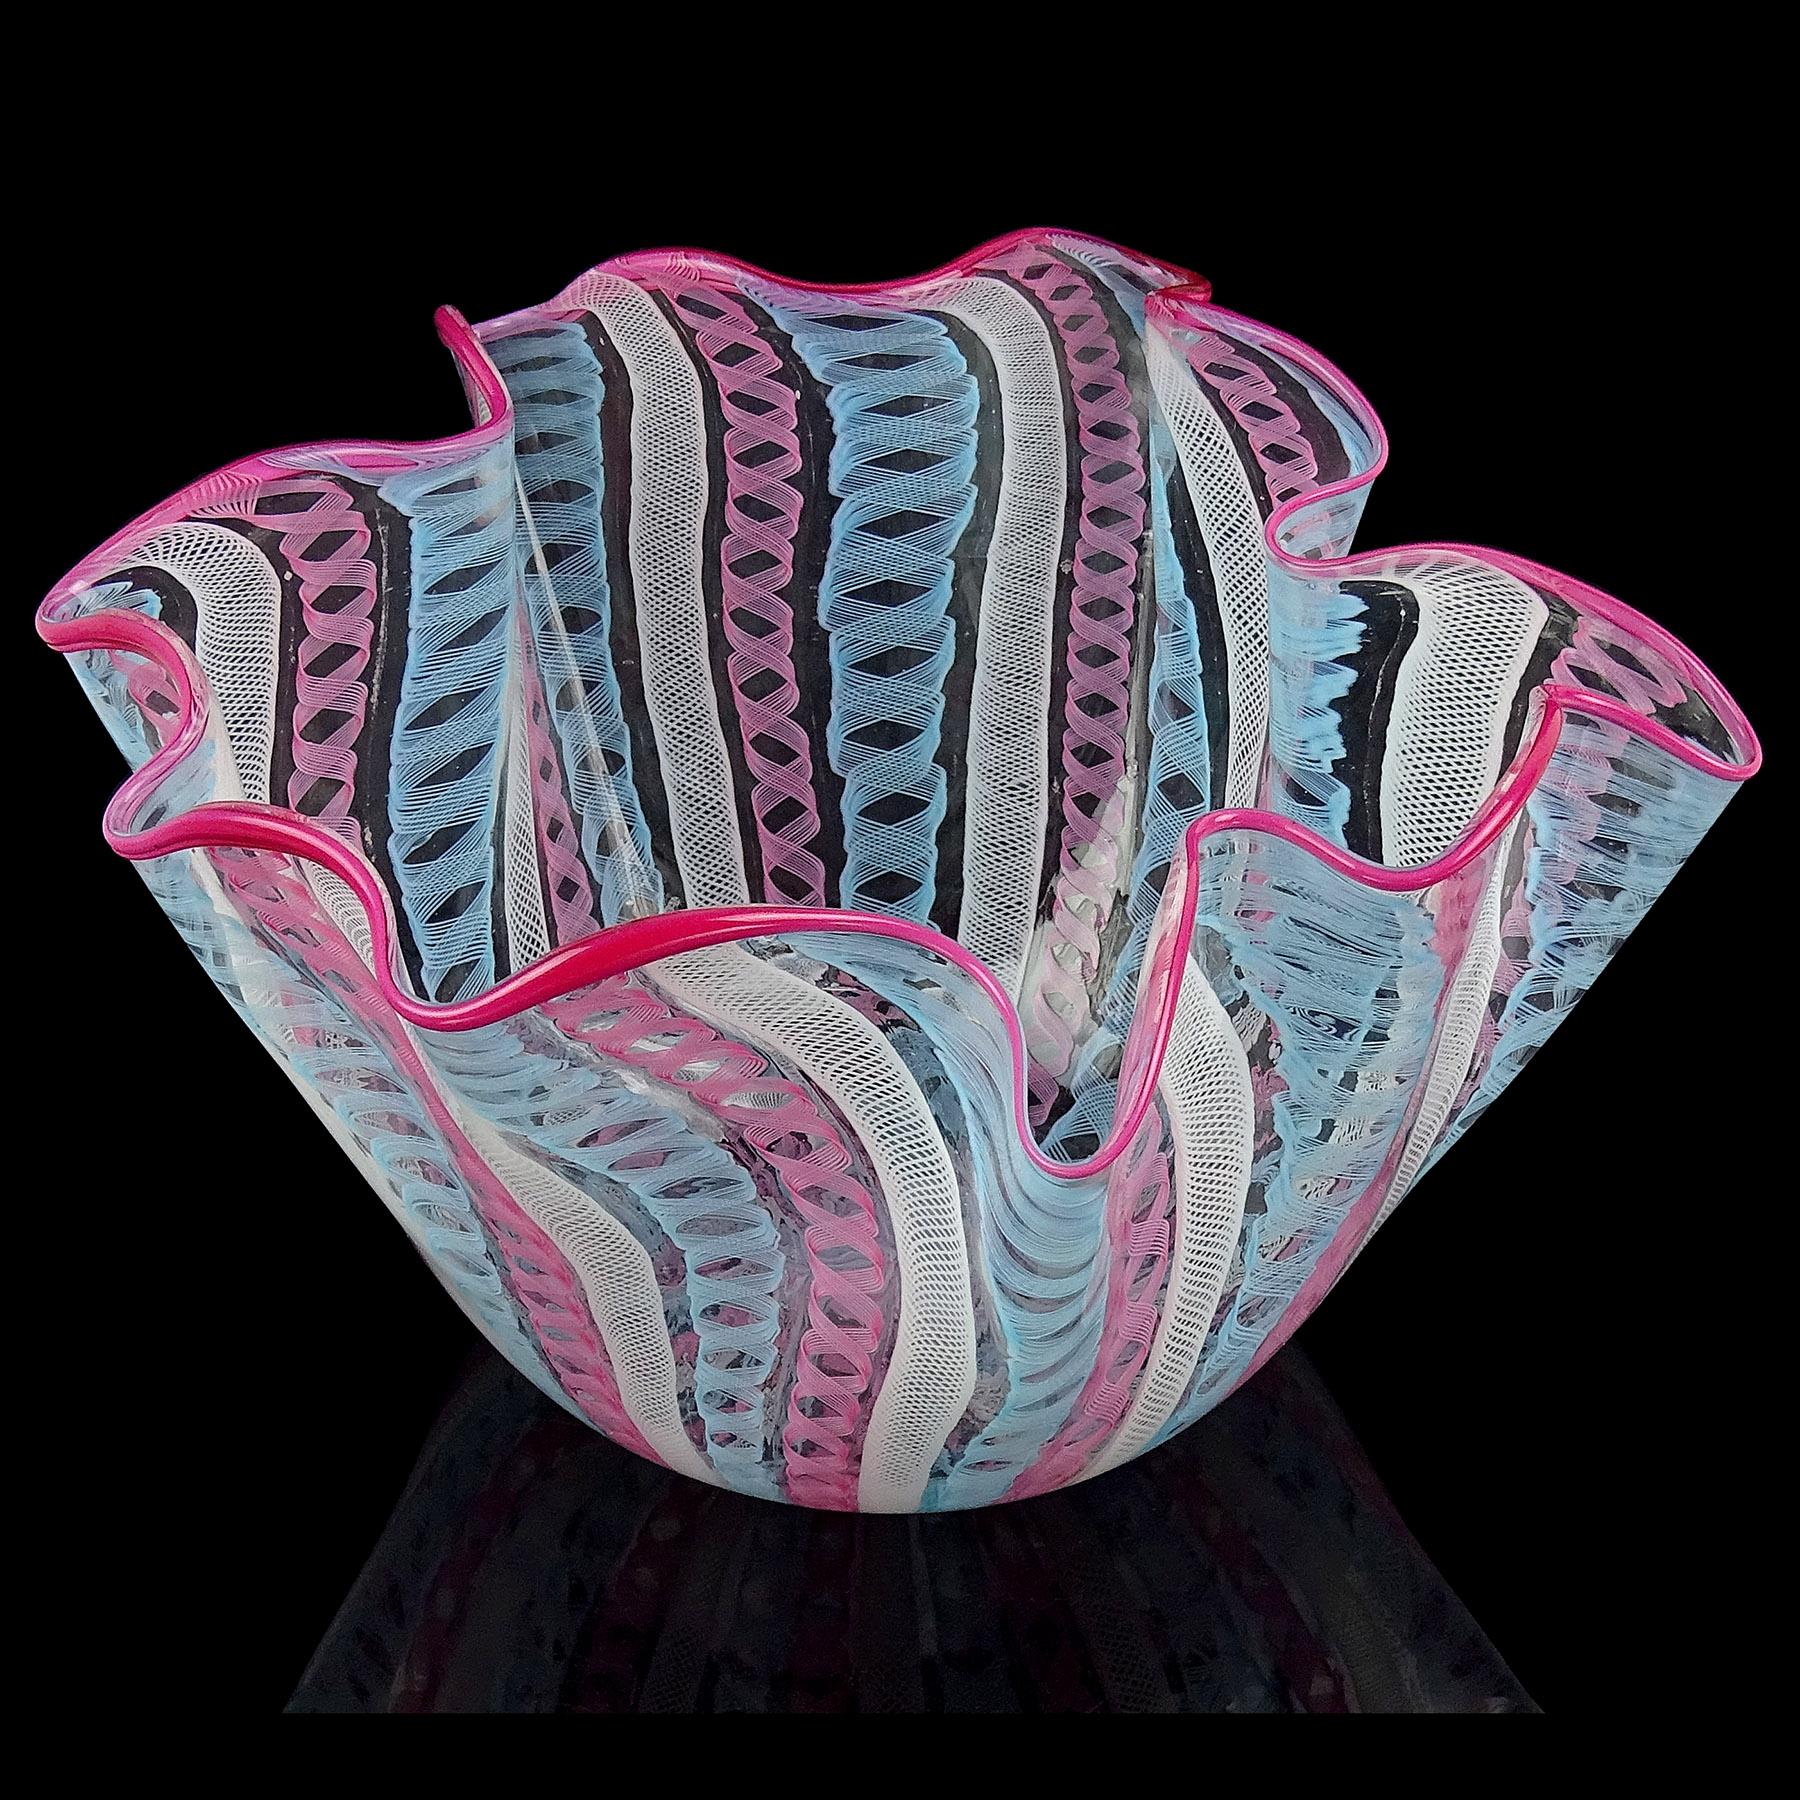 Gorgeous, und große, Vintage Murano mundgeblasen rosa, himmelblau, und weiße Bänder italienische Kunst Glas Taschentuch / Fazzoletto Vase Mittelstück. Dokumentiert für die Firma Fratelli Toso, mit Ähnlichkeiten in seinem Buch veröffentlicht. Die